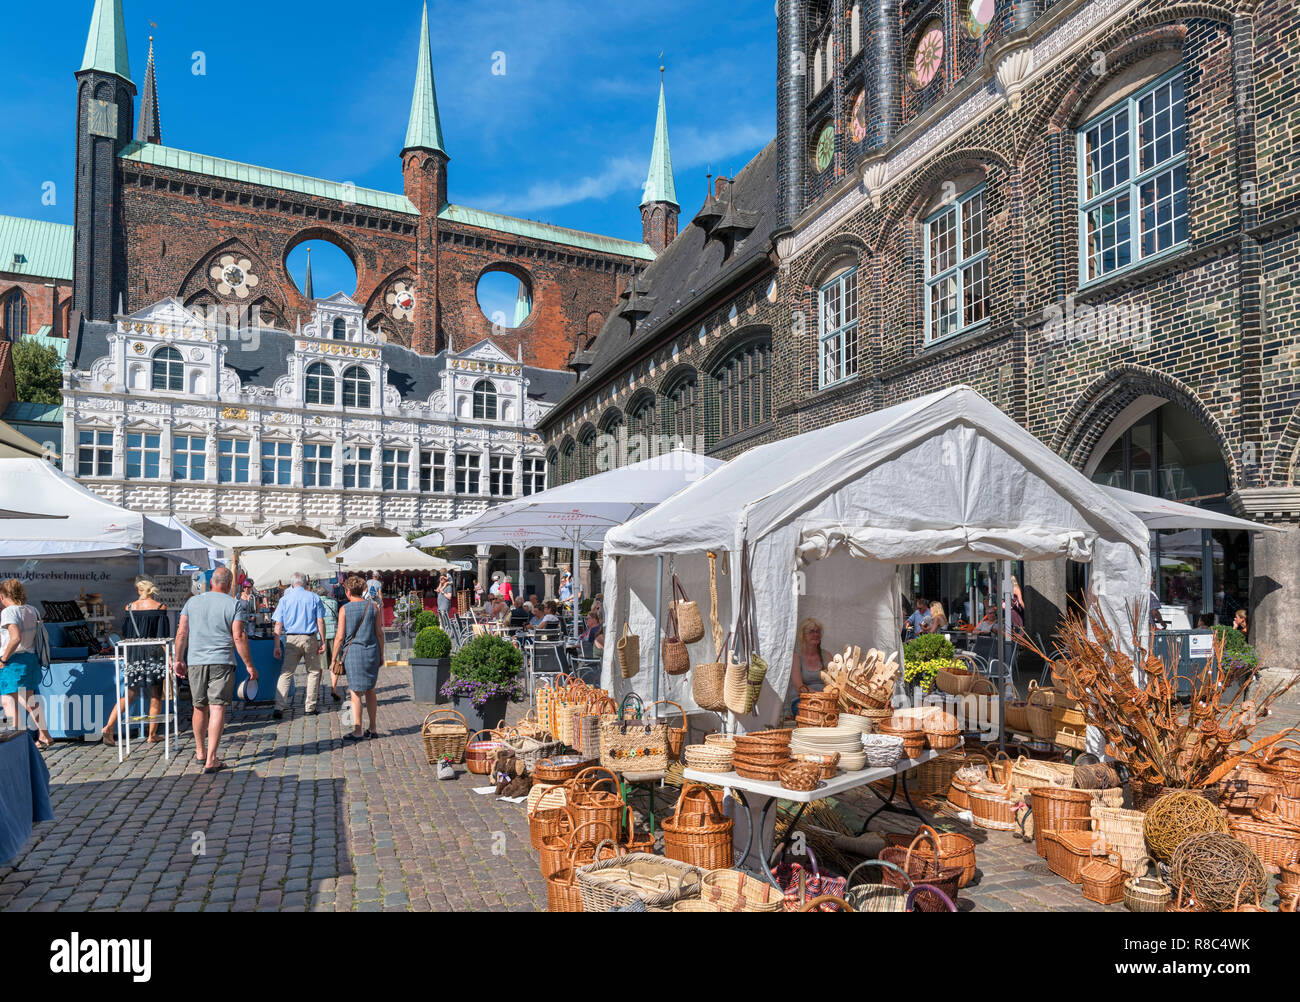 Mercato di domenica di fronte allo storico del XIII secolo Rathaus (Municipio), Markt, Lubecca, Schleswig-Holstein, Germania Foto Stock